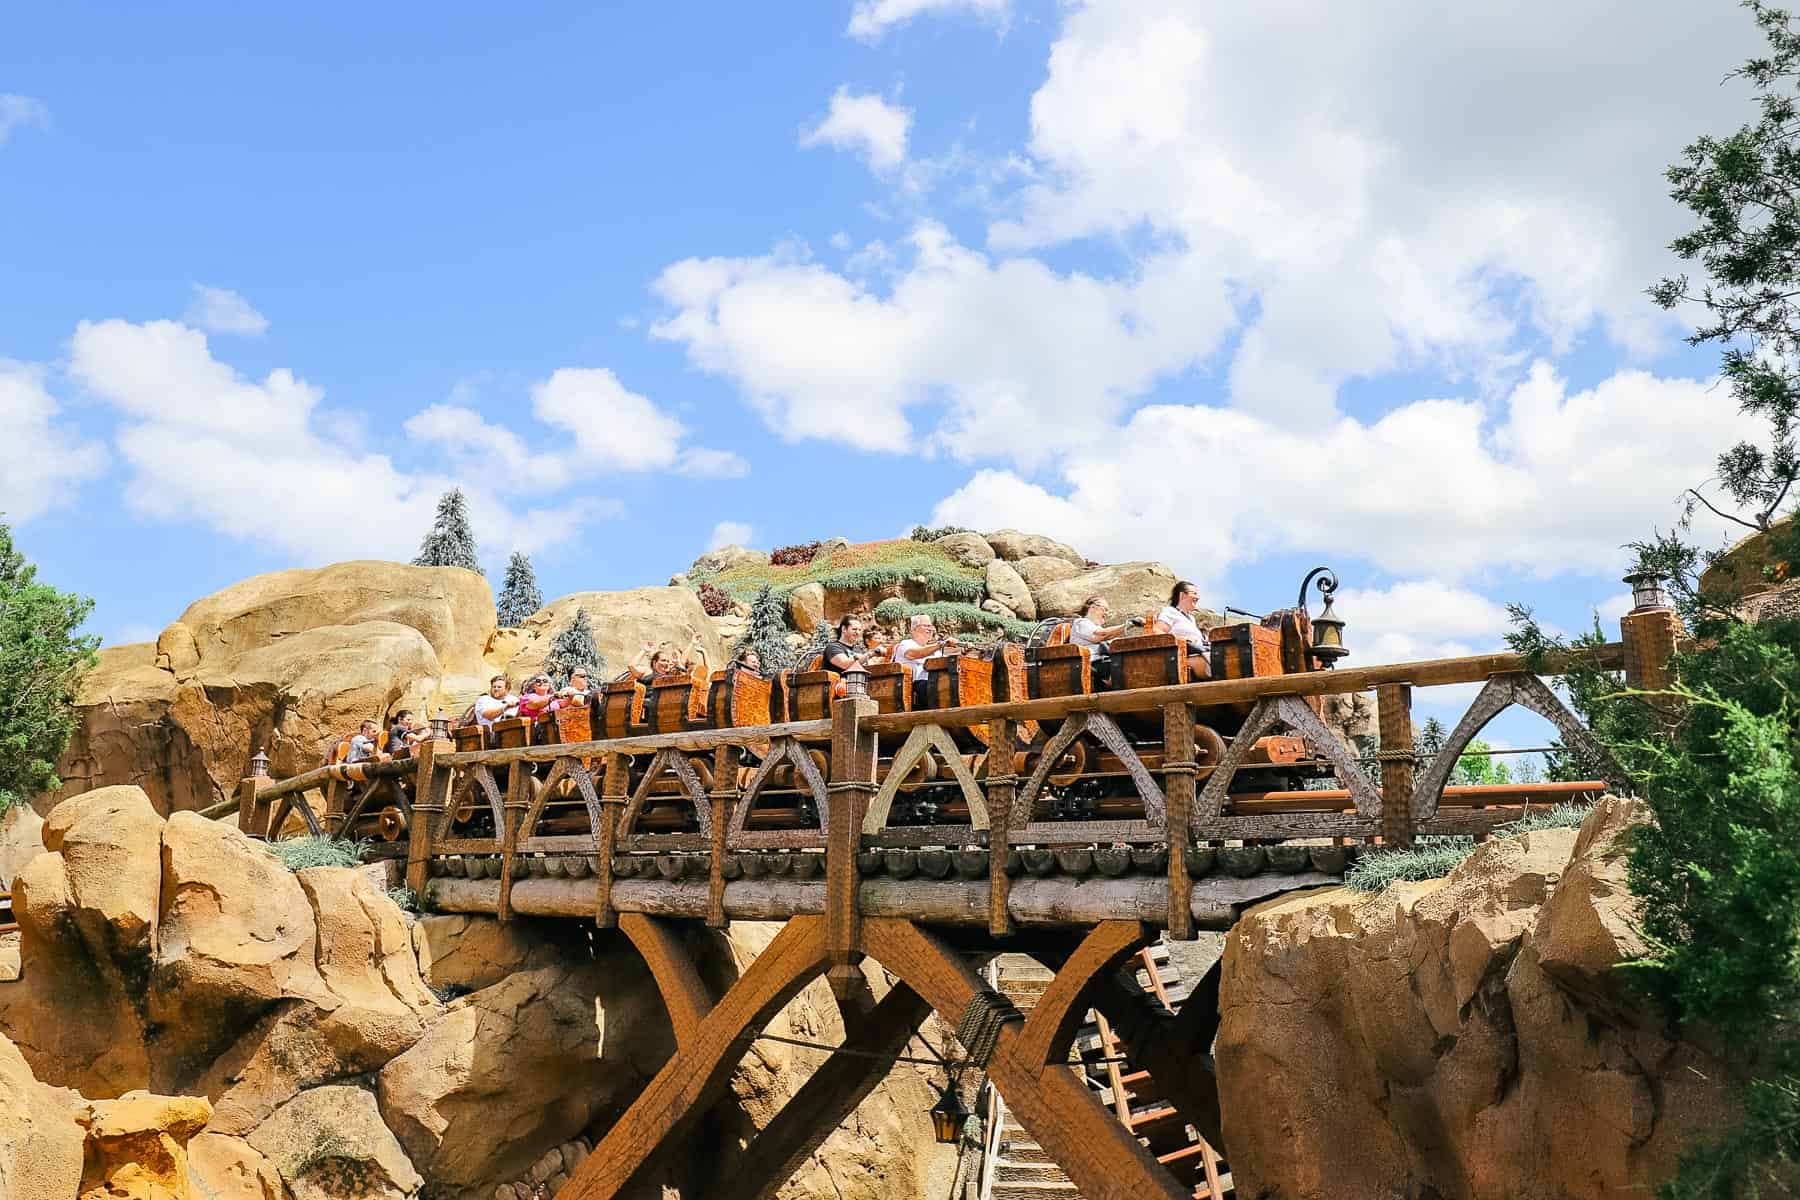 Guests riding Seven Dwarfs Mine Train at Magic Kingdom. 